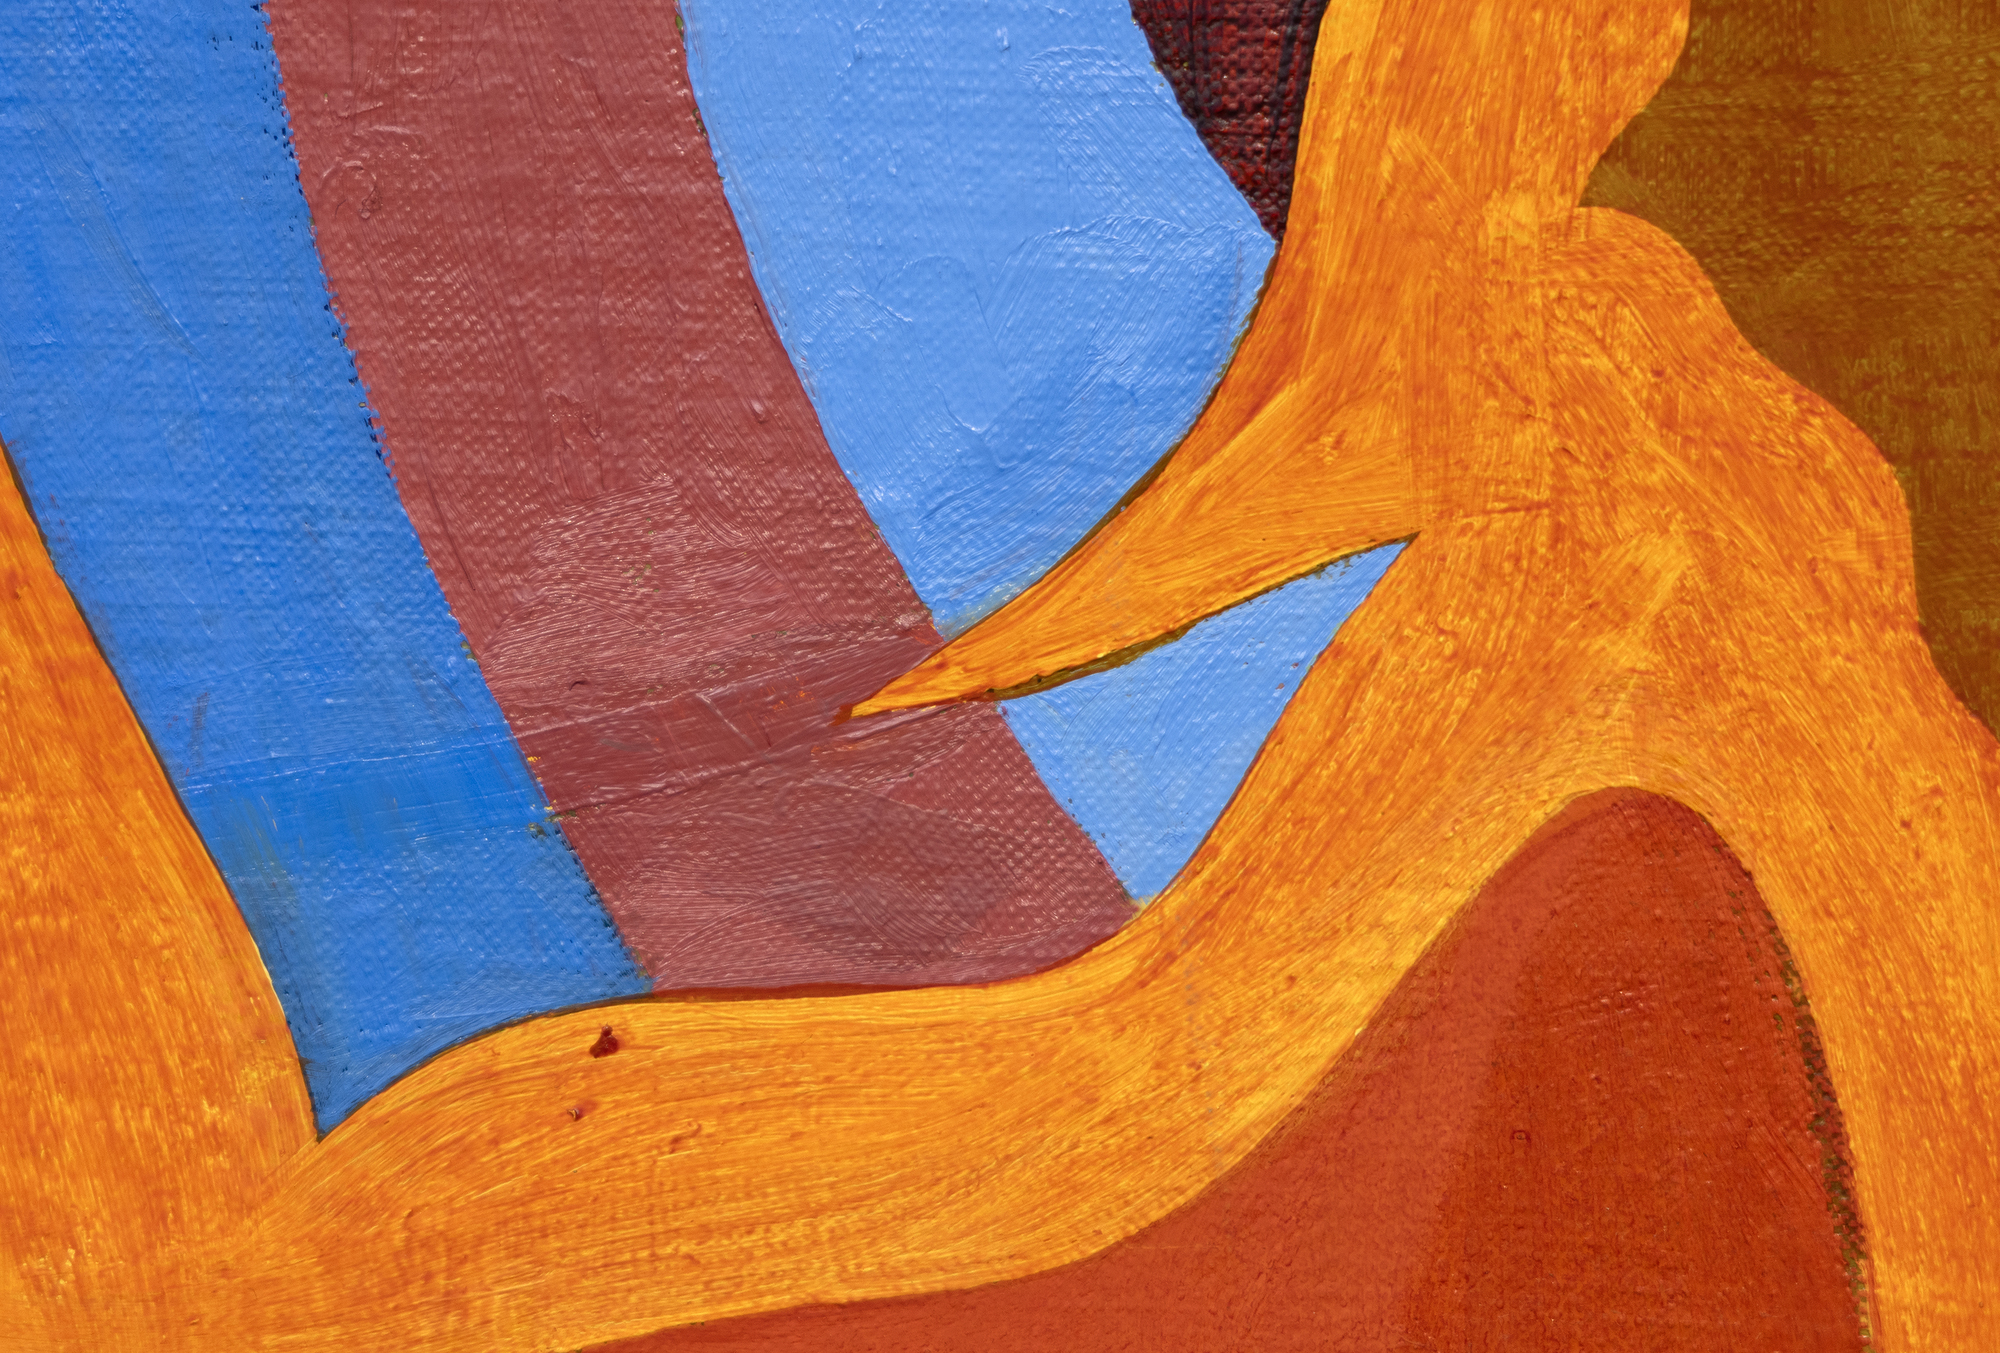 Nacido en 1944, Thomas Nozkowski creó pequeñas pinturas de gran riqueza cromática que reflejan las influencias dicotómicas de los expresionistas abstractos y los refugiados de la Bauhaus con los que estudió en la Cooper Union. Utilizando un pincel pequeño, su manejo incluye el raspado y el frotamiento de la pintura en formas que se registran en la obra terminada. Desarrolló un vocabulario distintivo y de gran alcance, empleando formas geométricas de tipo biomórfico en variadas combinaciones de colores y una amplia gama de asociaciones: suelos de baldosas, grupos de células, arquitectura y espacio exterior. A menudo, se destilan de sus propios recuerdos y experiencias. Nozkowski comentó este cuadro en concreto (Sin título, 1994) diciendo que refleja su fascinación por las escenas mitológicas pintadas en los paneles de las arcas de cassones del Renacimiento. Dijo que era el mejor de los tres o cuatro paneles de 15" x 30" de esta serie. Nozkowski fue manejado durante muchos años por la Galería Pace. Murió en 2019.